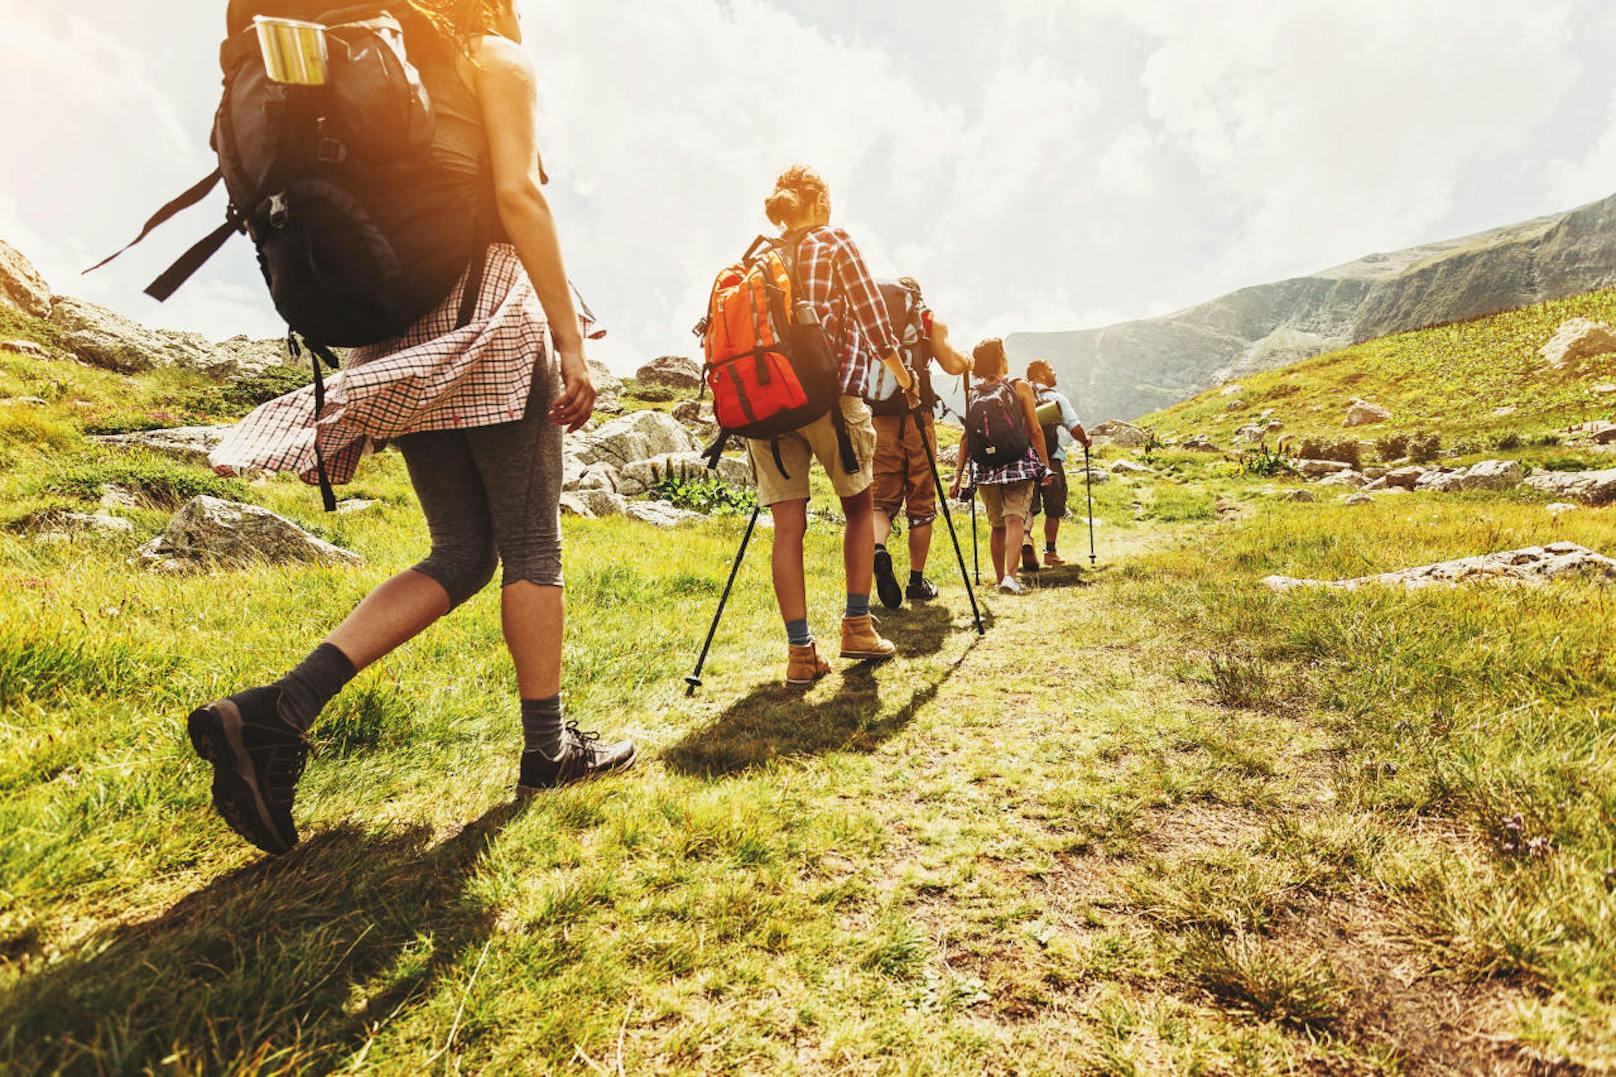 Wie Wandern in Zeiten von Corona erfolgen kann, darüber haben sich Experten des Österreichischen Alpenvereins und der Naturfreunde in Zusammenarbeit mit dem Verband alpiner Vereine Österreichs (VAVÖ) intensiv Gedanken gemacht: